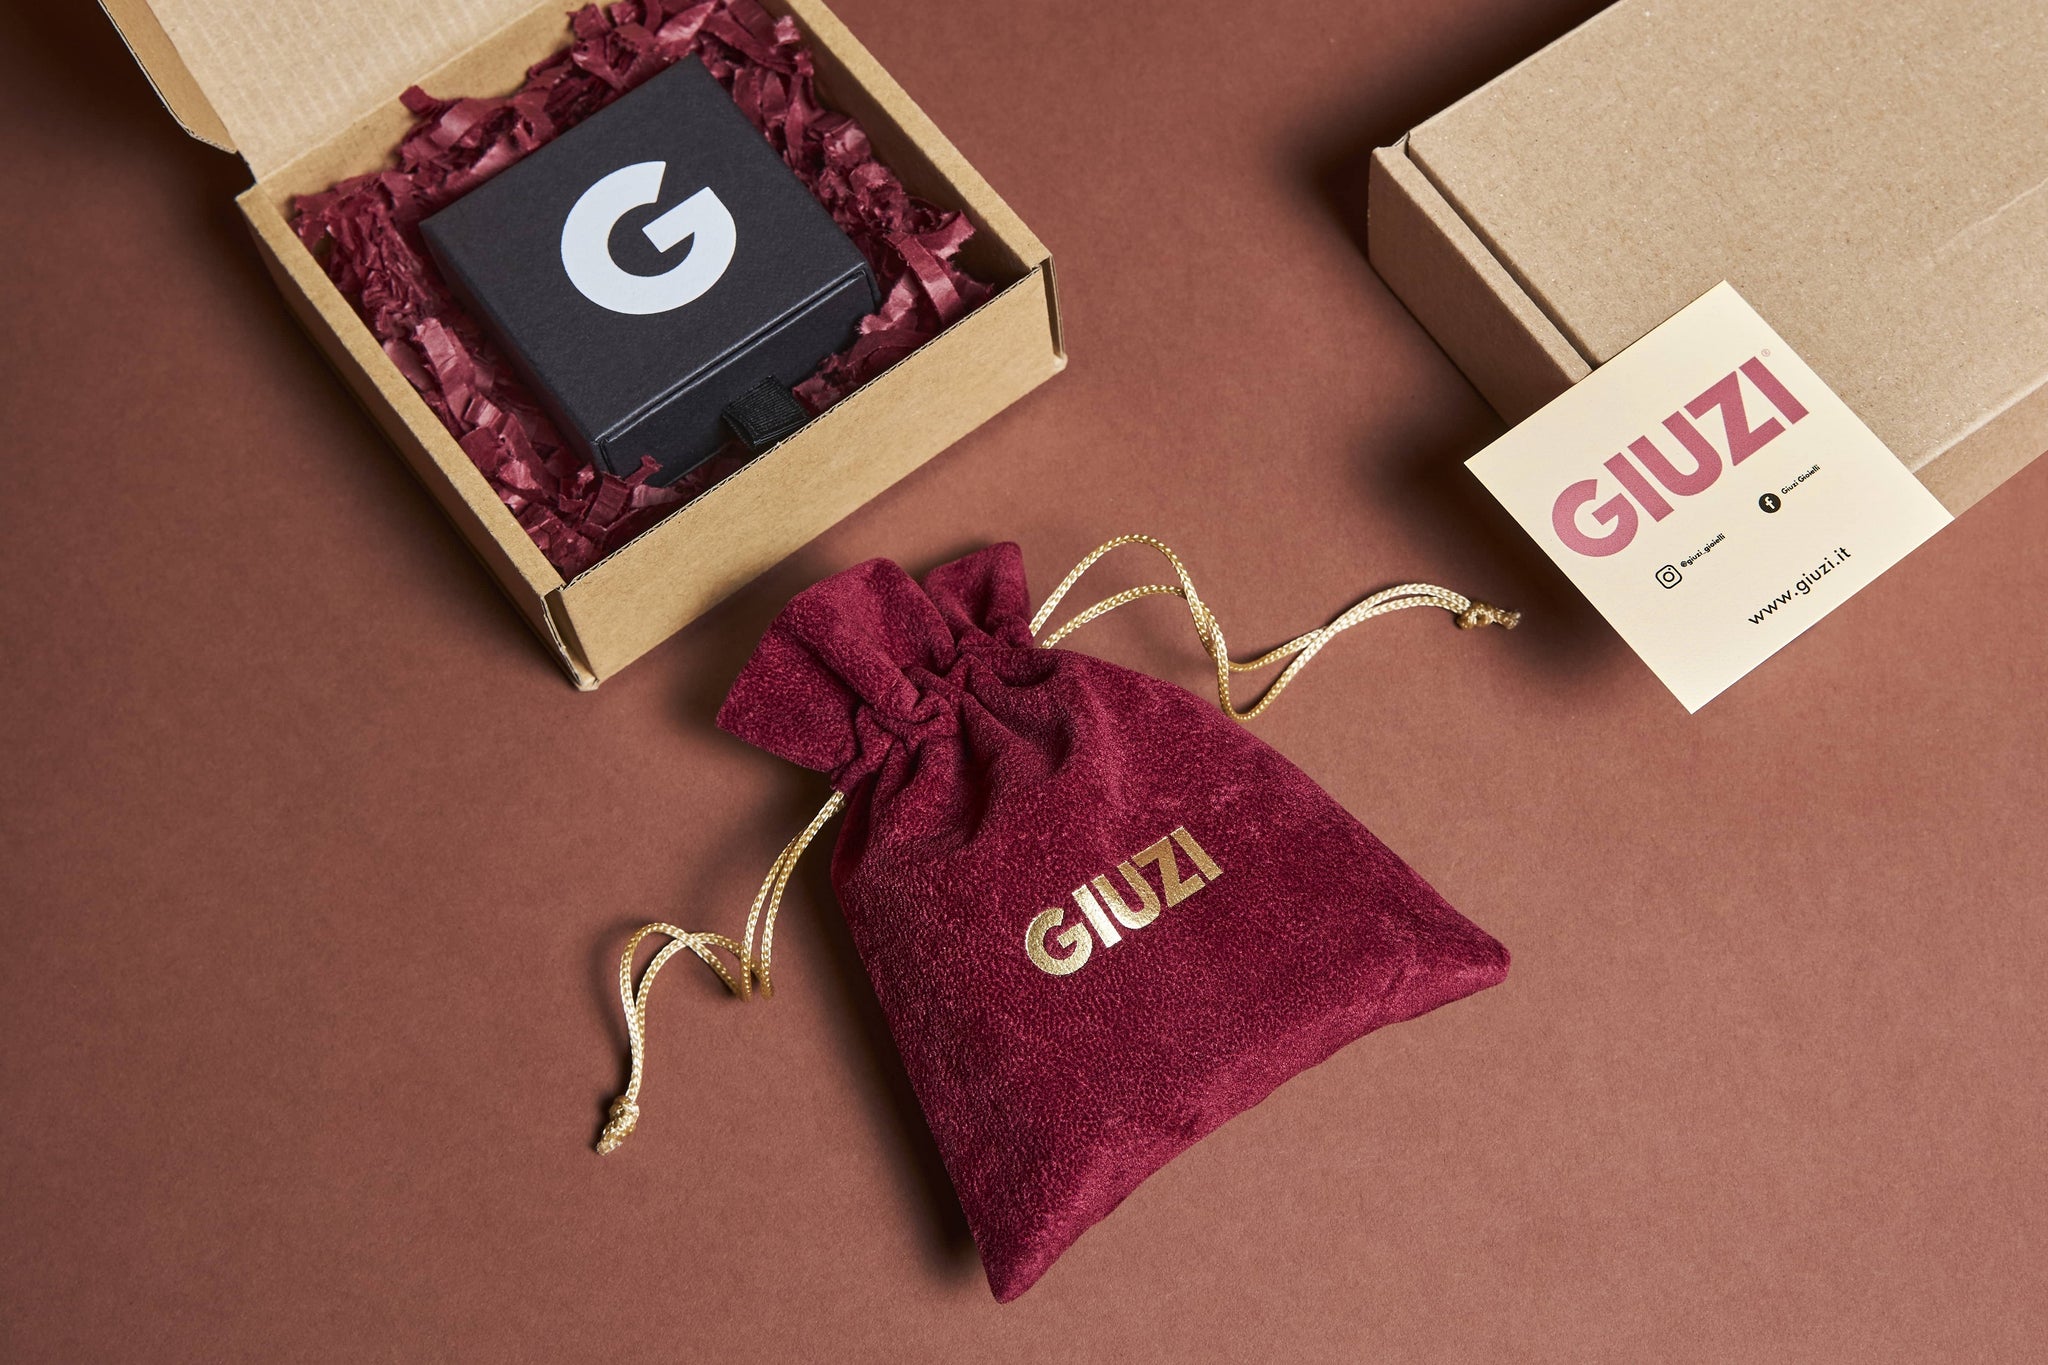 Confezione regalo composta da sacchettino in velluto amaranto con logo GIUZI oro, scatolina nera e tutto contenuto in una scatola di cartone riciclato.